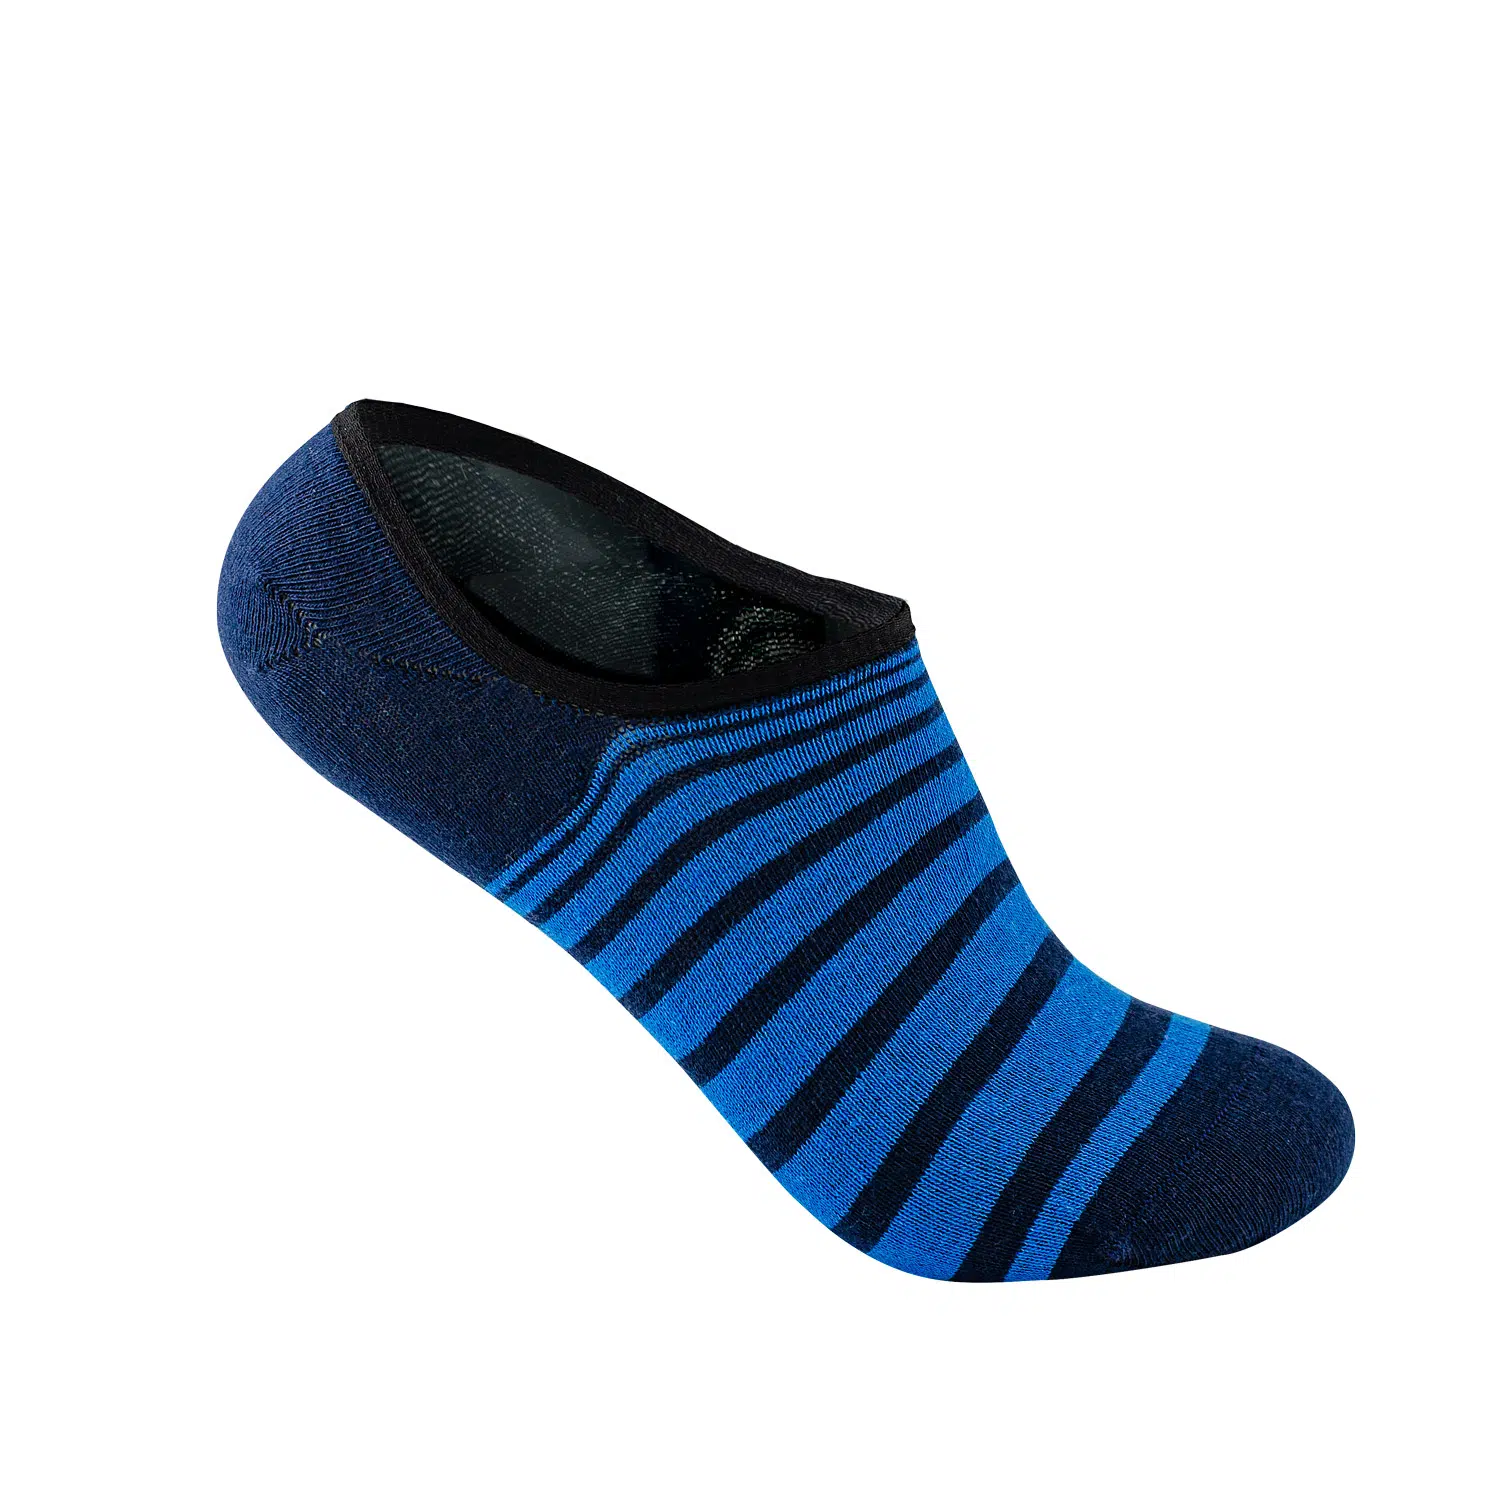 Premium upcycled footie socks - gp01u - footie socks 1